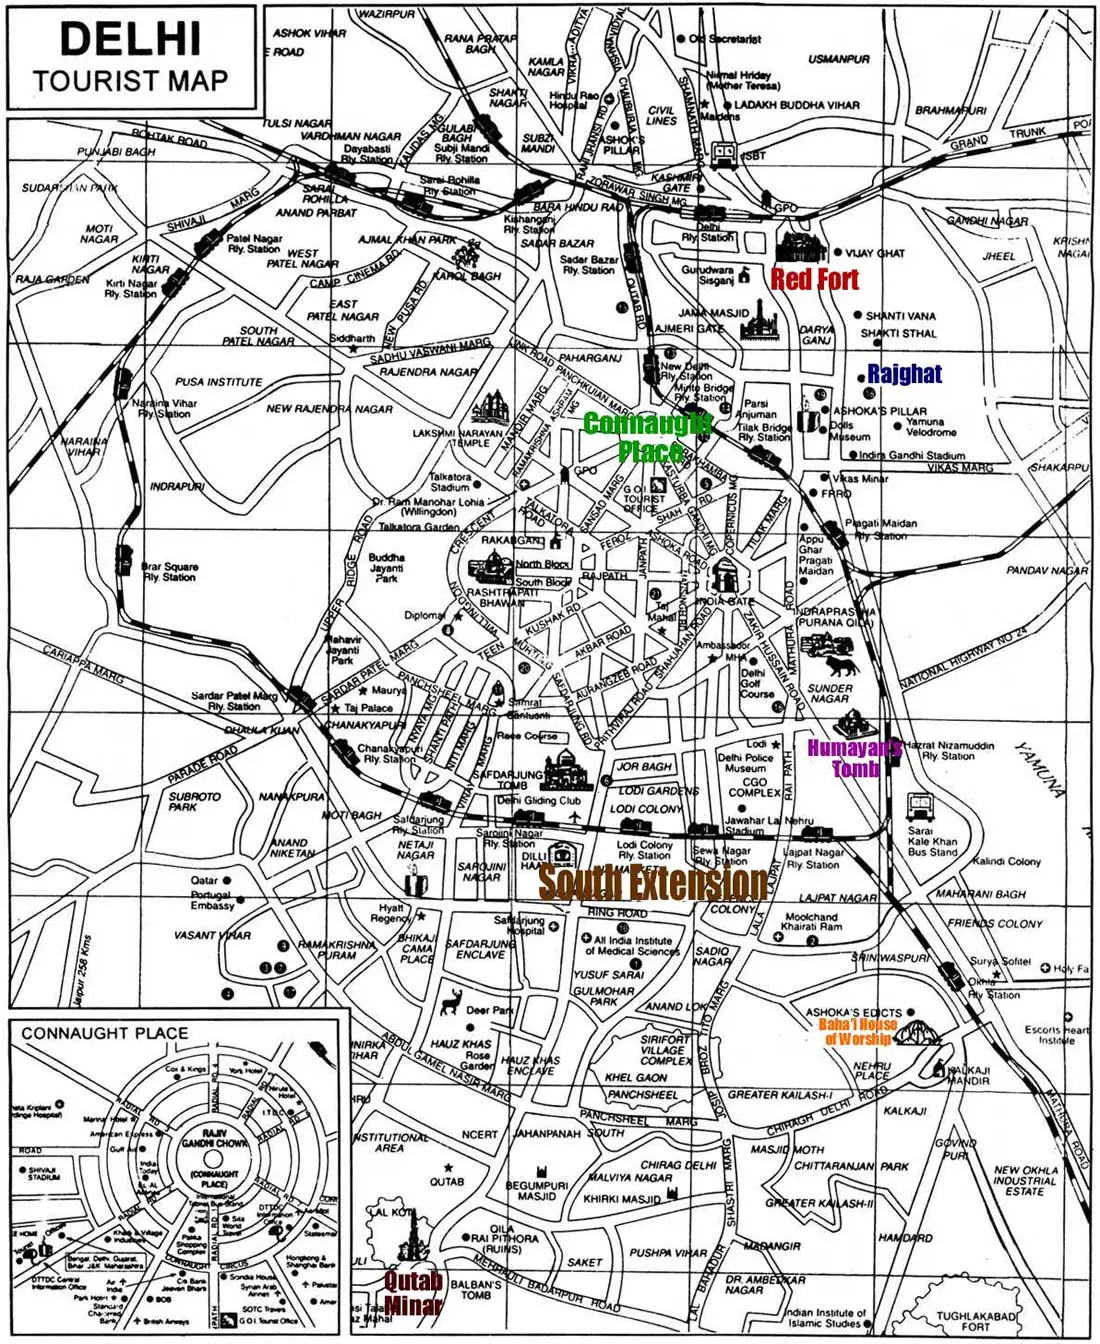 Tourist Map of Delhi